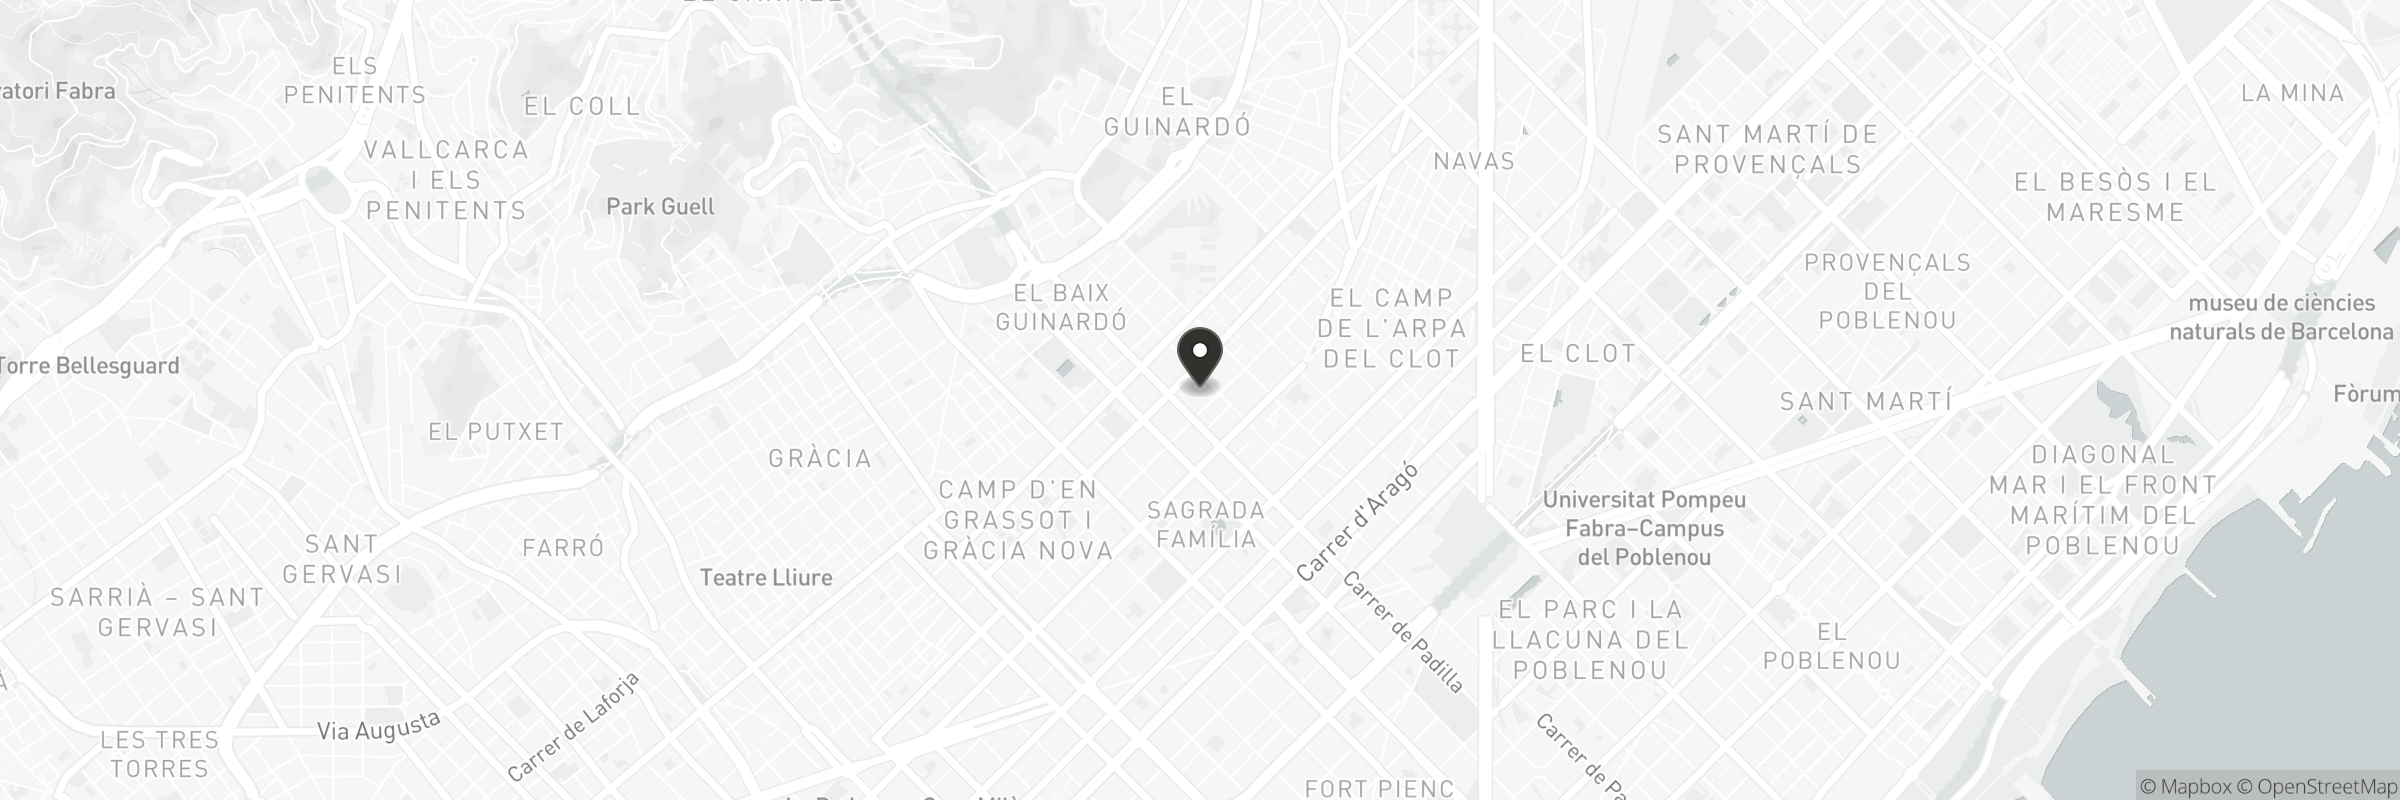 Mapa con la dirección de Restaurante Gaudeix Barcelona